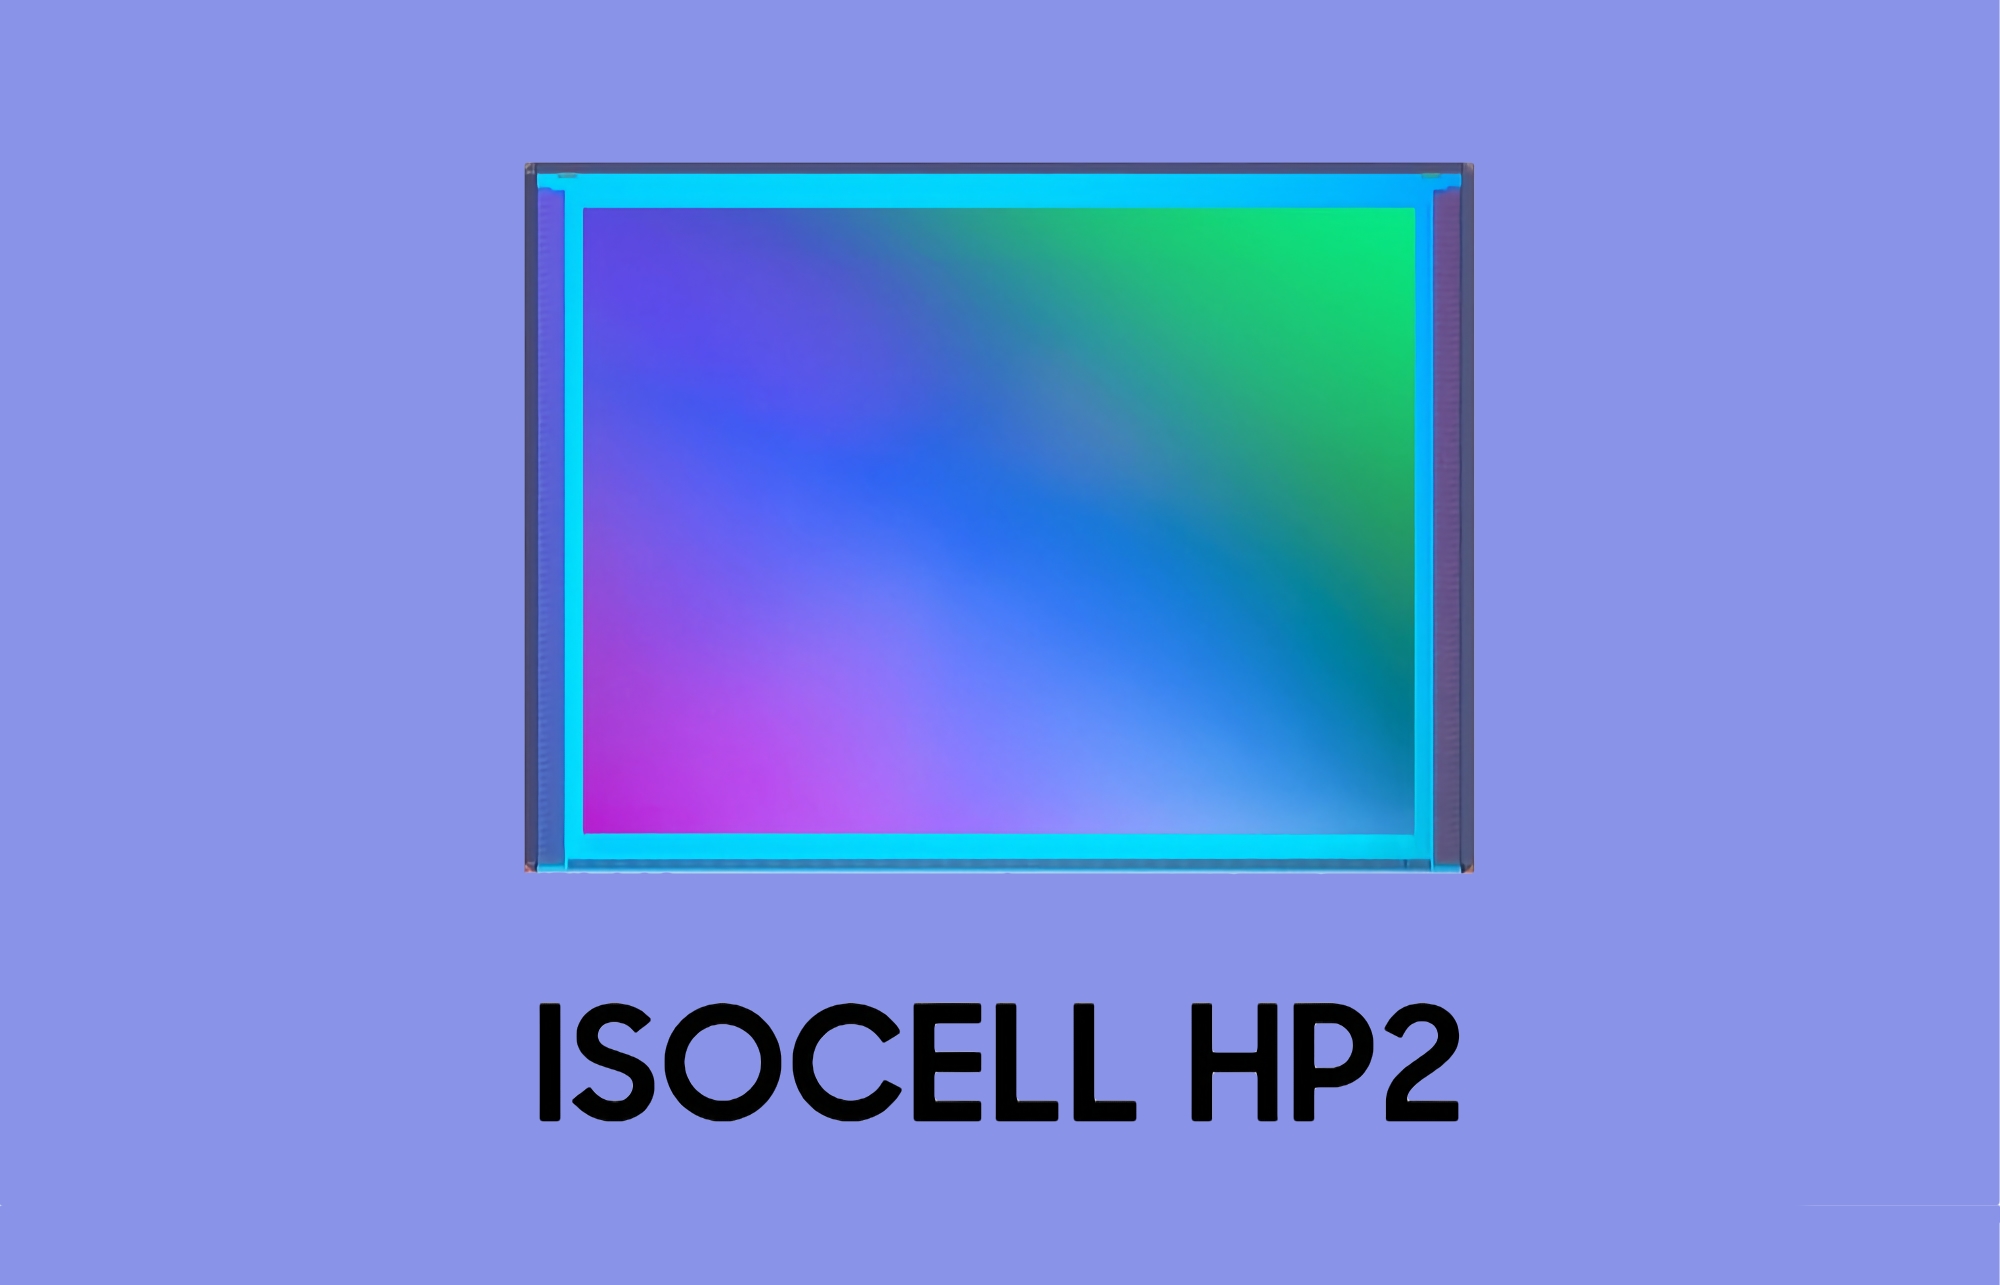 Samsung stellt ISOCELL HP2 vor: ein neuer 200-Megapixel-Sensor für das Flaggschiff Galaxy S23 Ultra